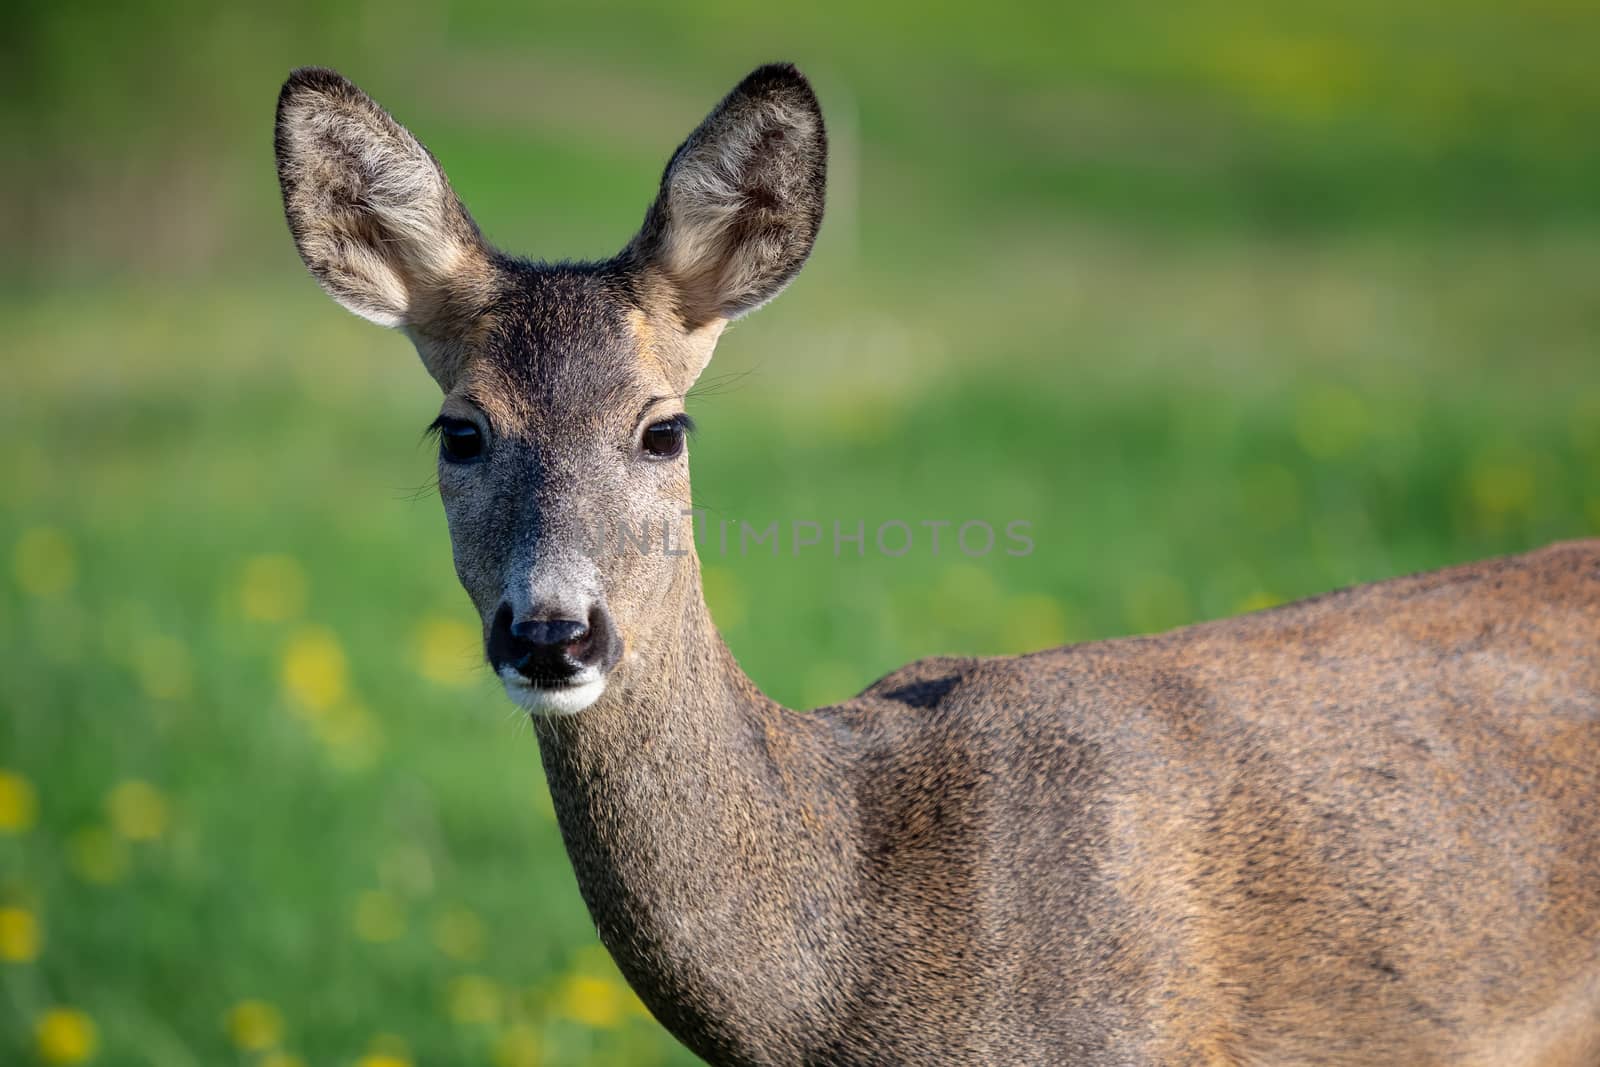 Roe deer in grass, Capreolus capreolus. Wild roe deer in spring nature.